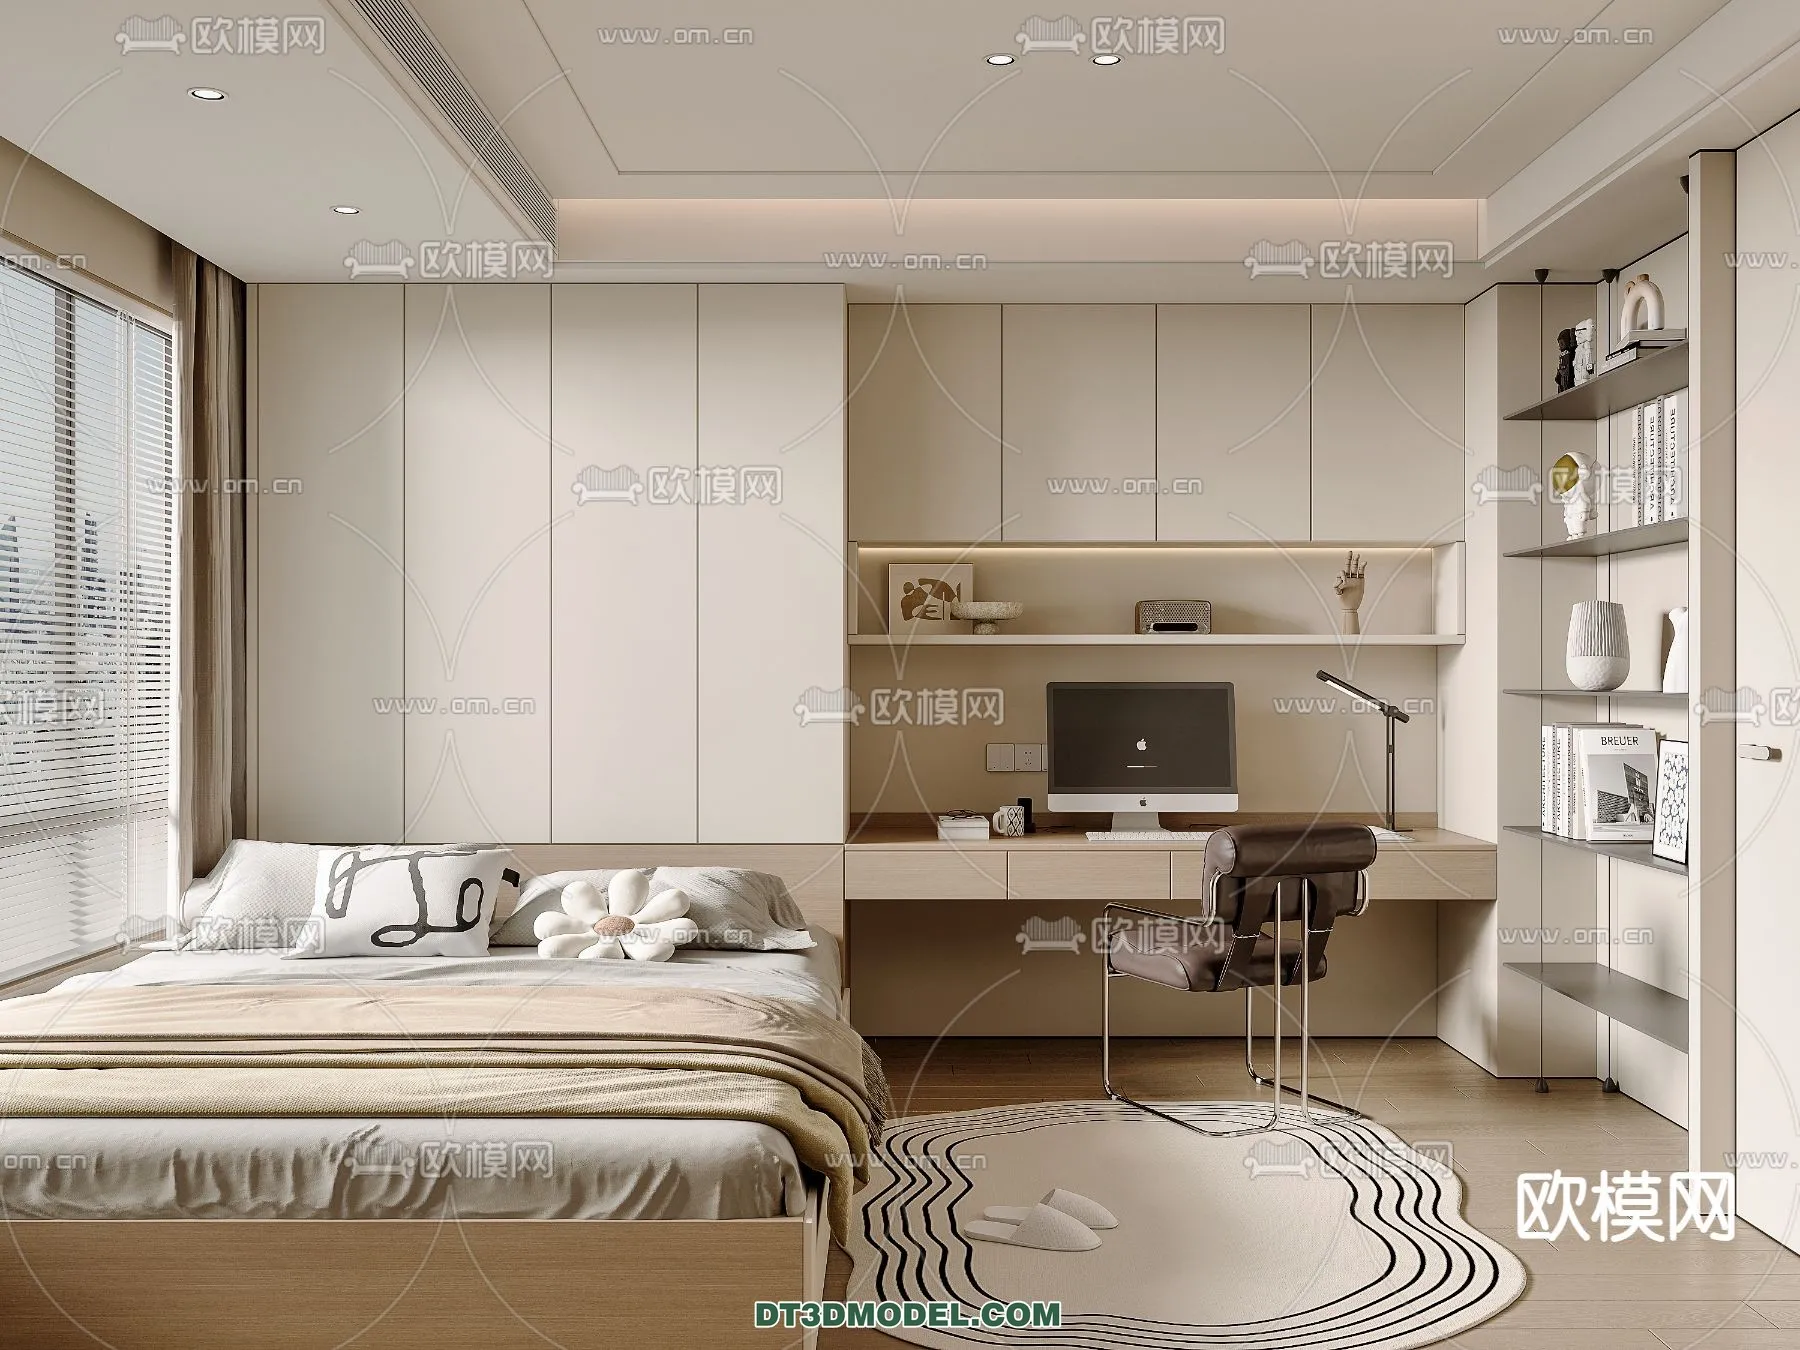 Tatami Bedroom – Japan Bedroom – 3D Scene – 059